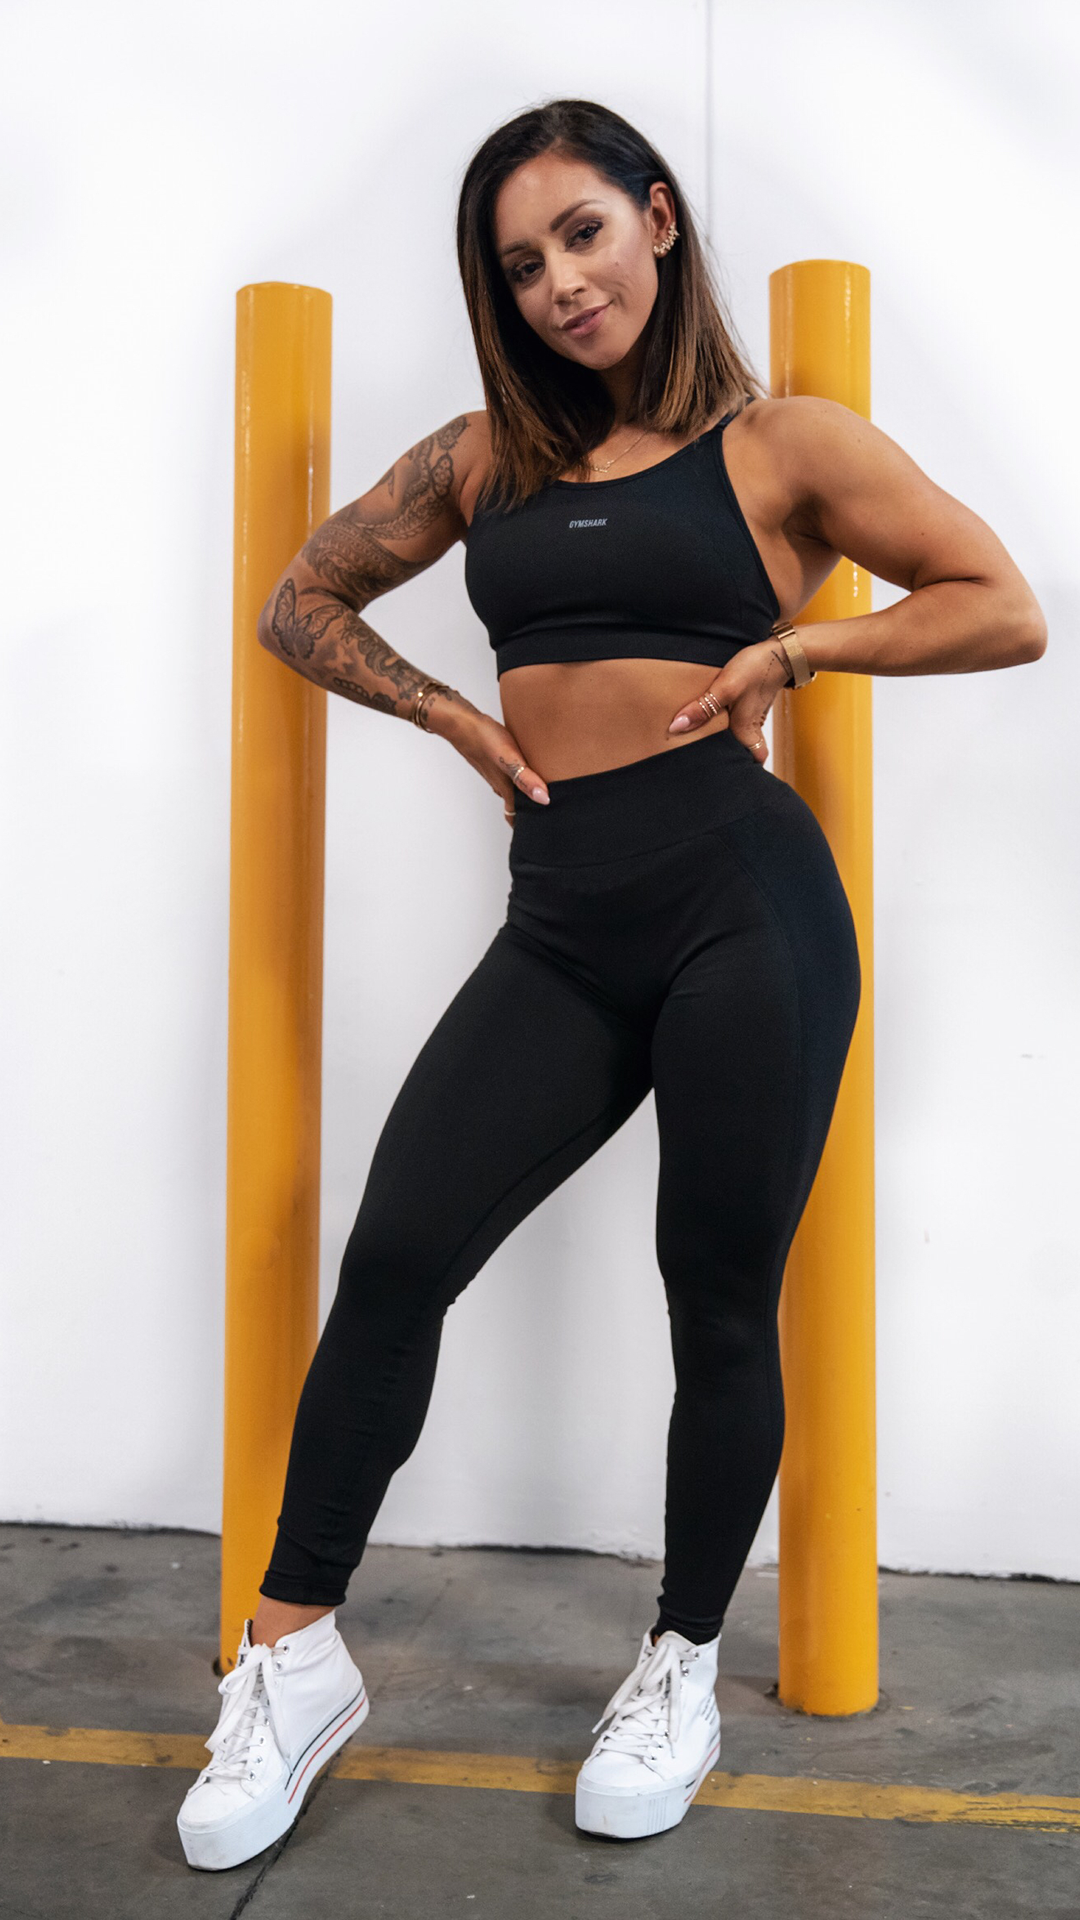 Gymshark Flex High Waisted Leggings - Black/Charcoal - Gymshark Flex High Waisted Leggings - Black/Charcoal -   10 fitness Mujer wallpaper ideas